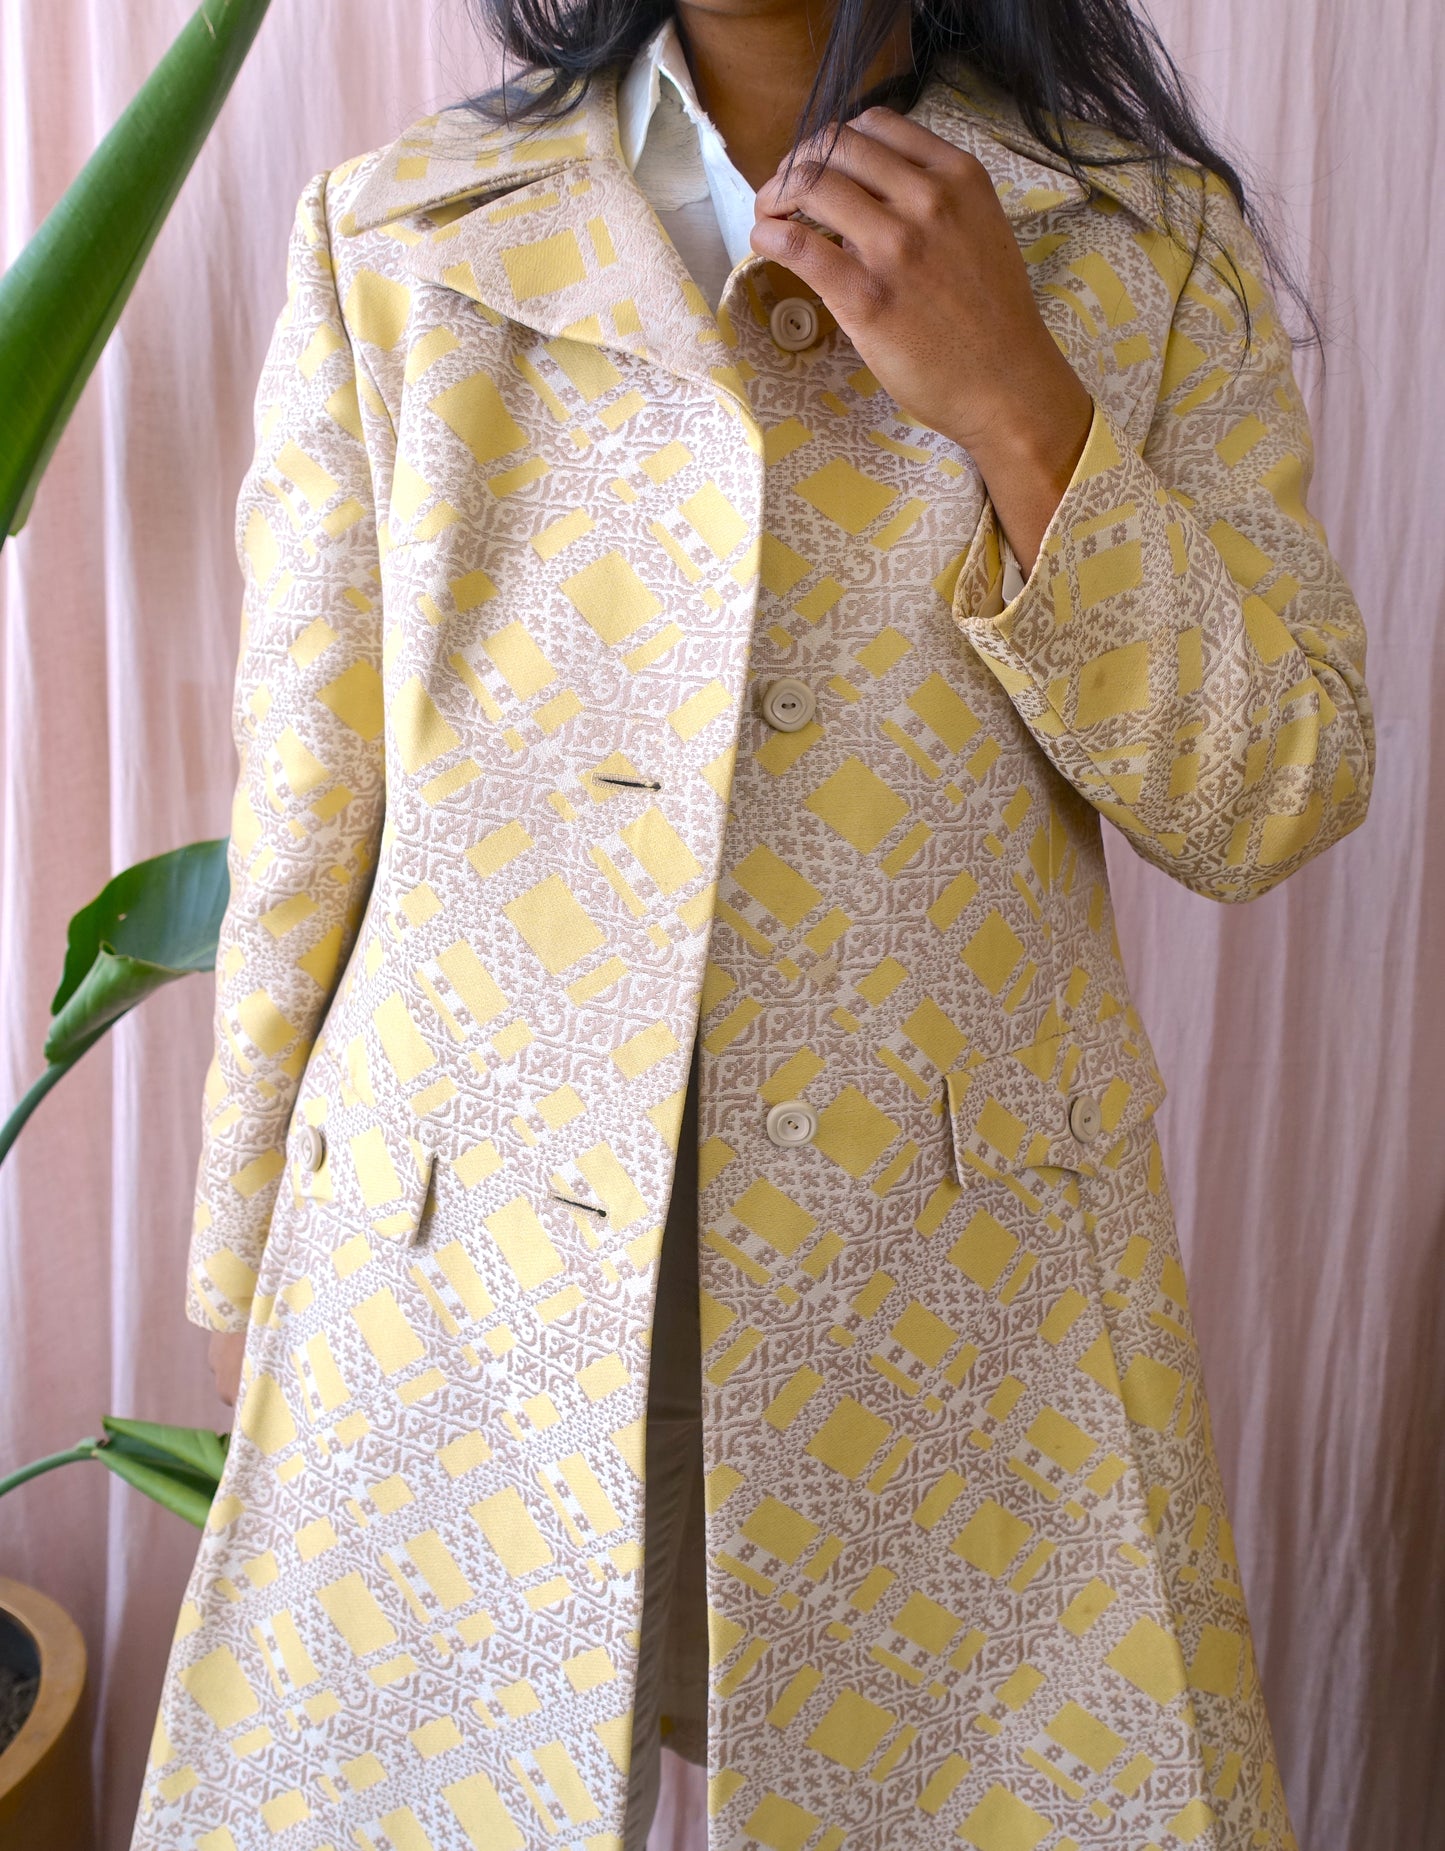 Vintage unique jacquard pastel Parisienne coat